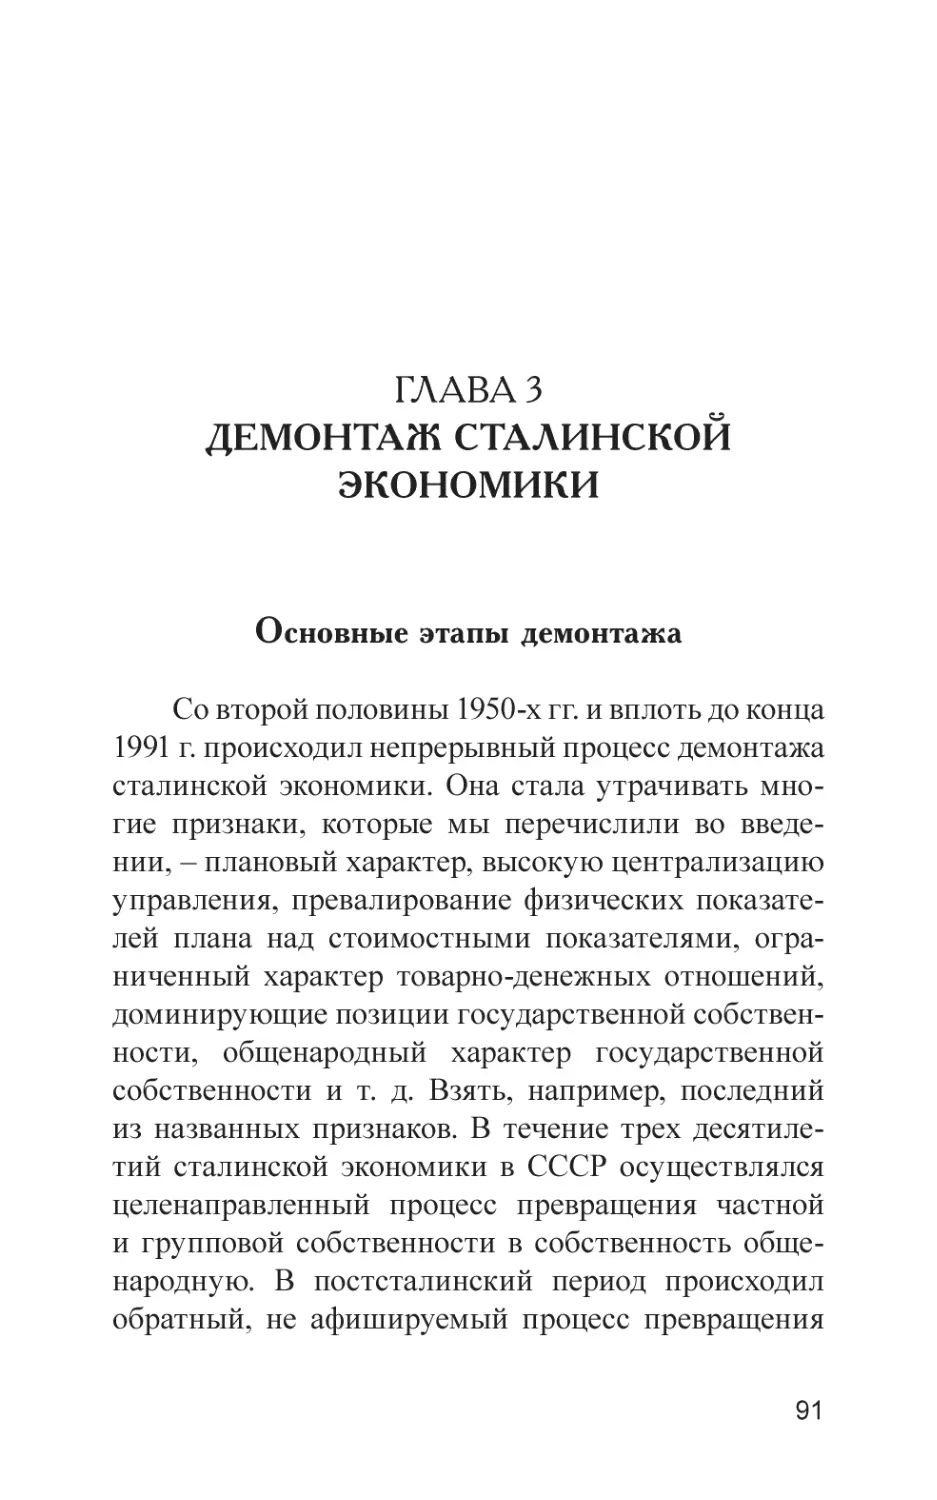 Глава 3. Демонтаж сталинской экономики
Основные этапы демонтажа